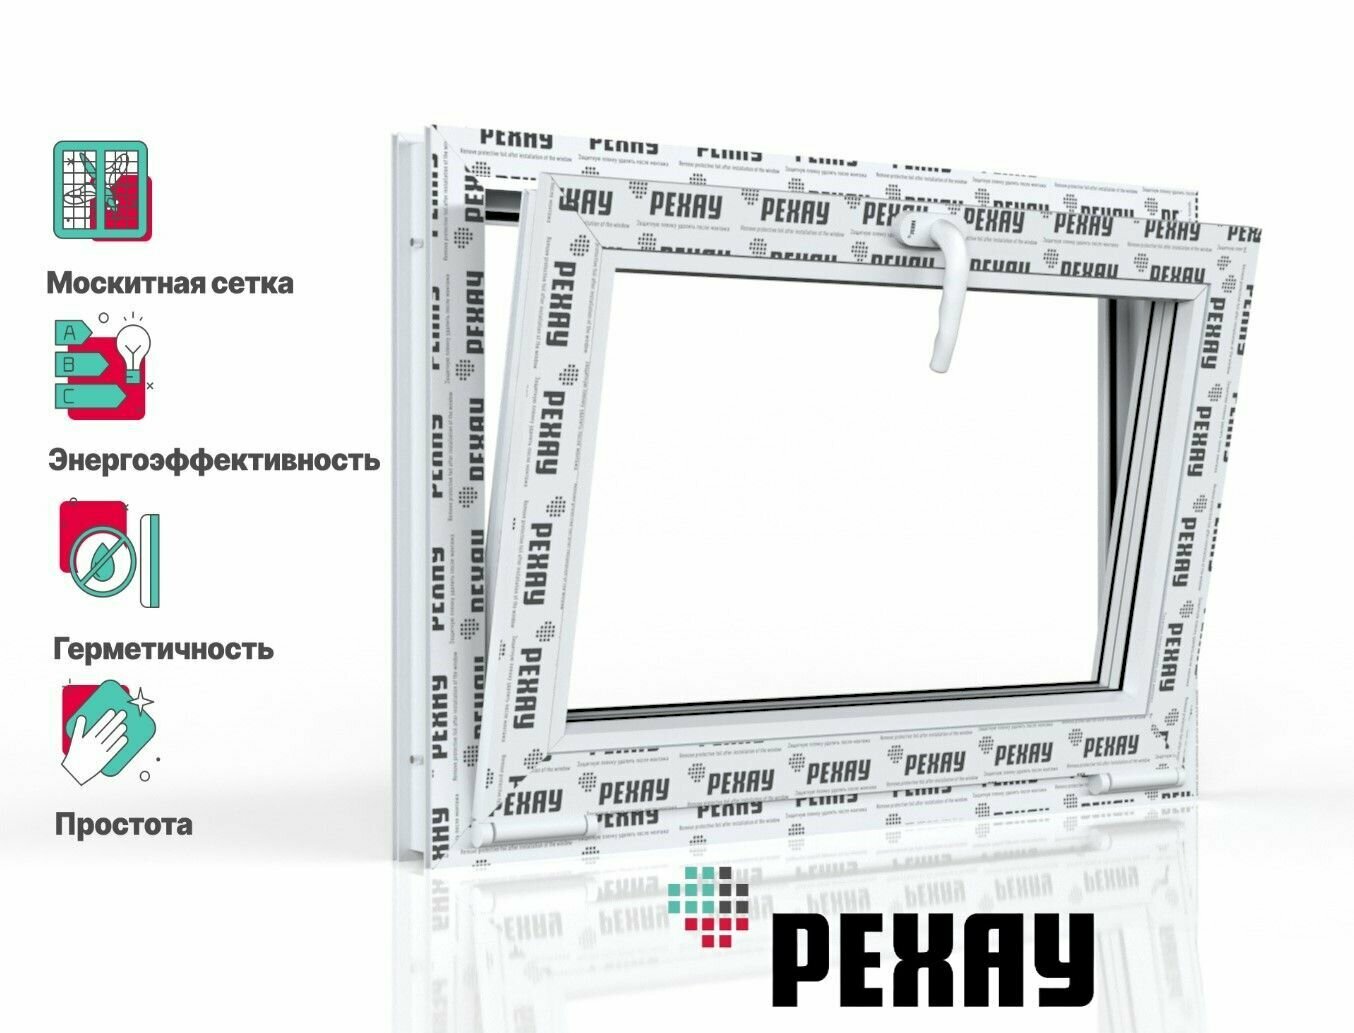 Пластиковое окно ПВХ + москитная сетка рехау DELIGHT профиль 70 мм 450x600 мм (ВхШ) с учетом подставочного профиля фрамуга энергосберегаюший двухкамерный стеклопакет белое